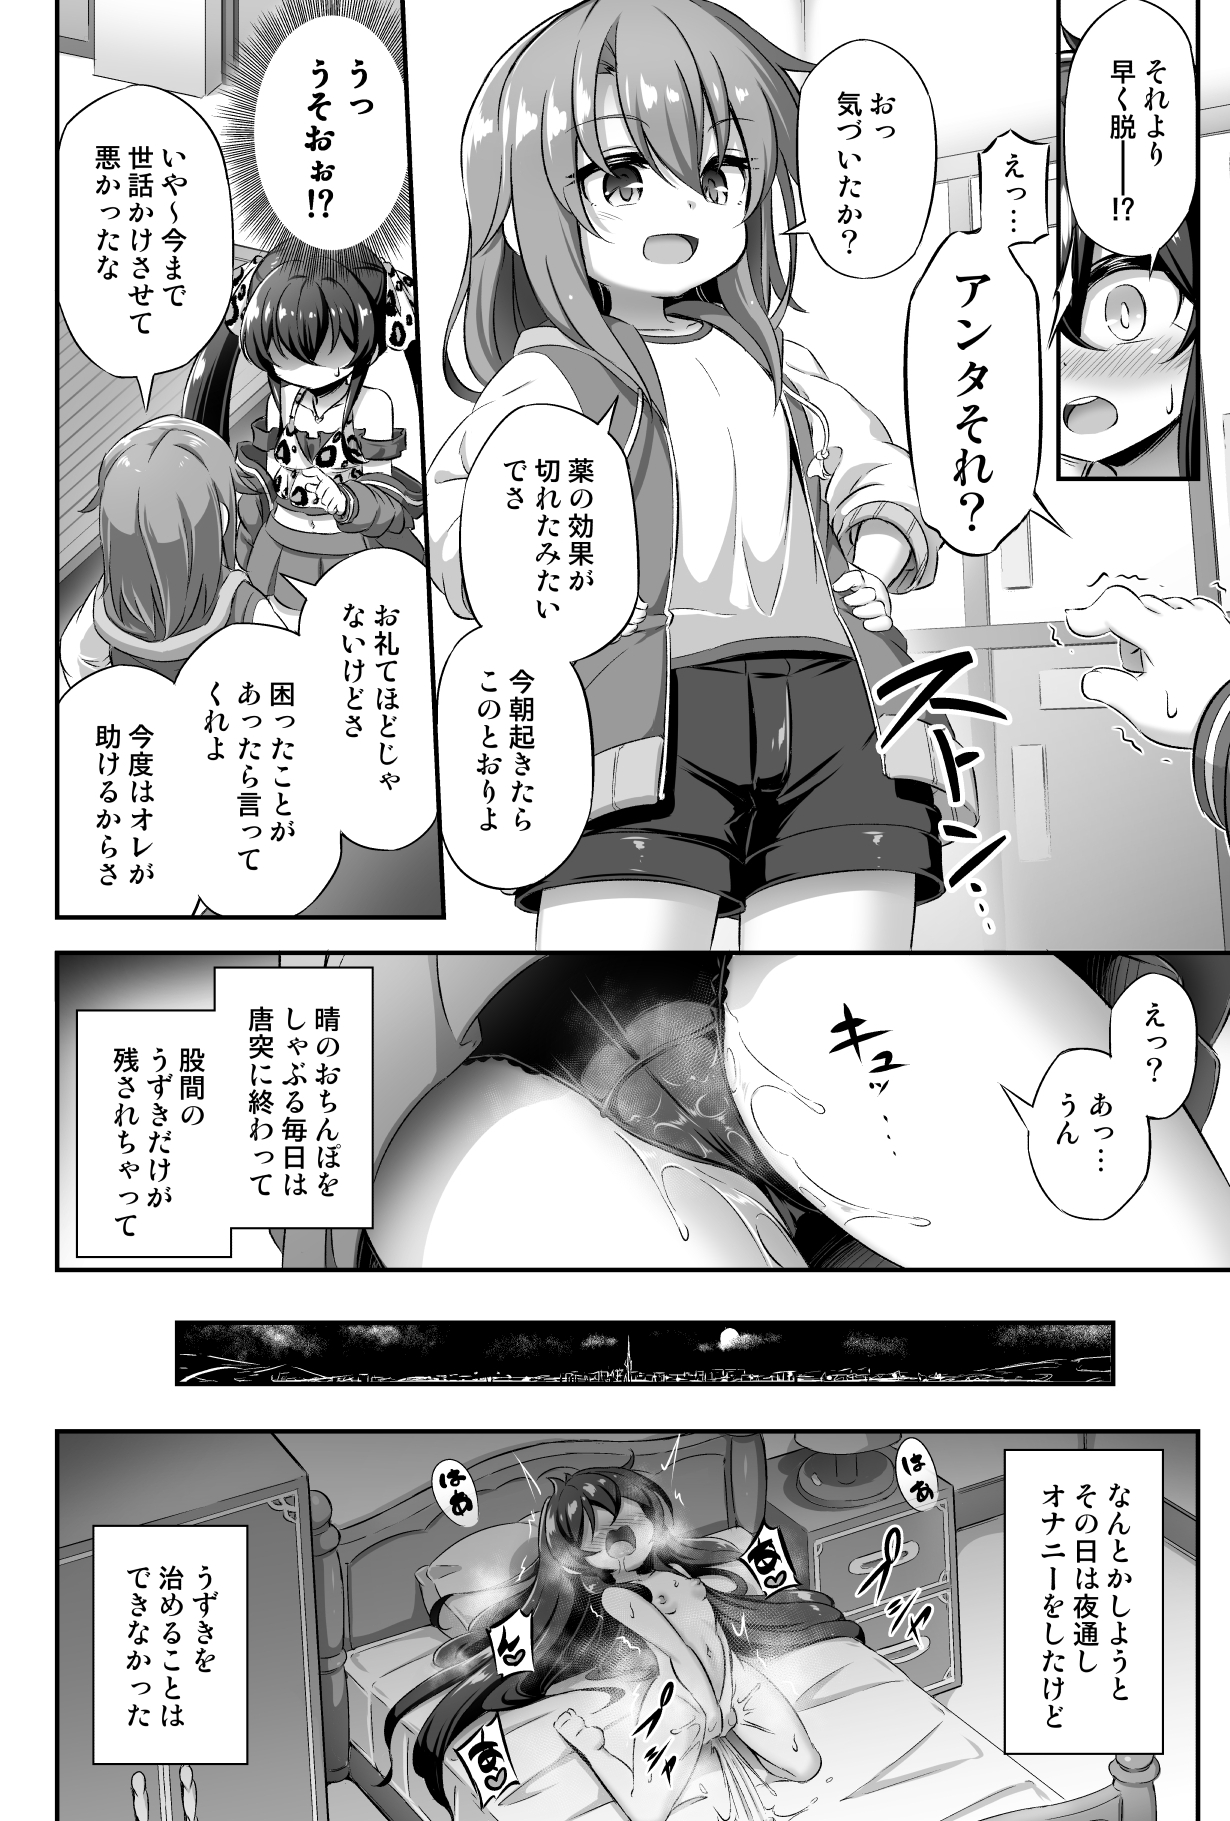 [Achromic (Musouduki)] Loli & Futa Vol. 13 (THE IDOLM@STER CINDERELLA GIRLS) [Digital] page 19 full